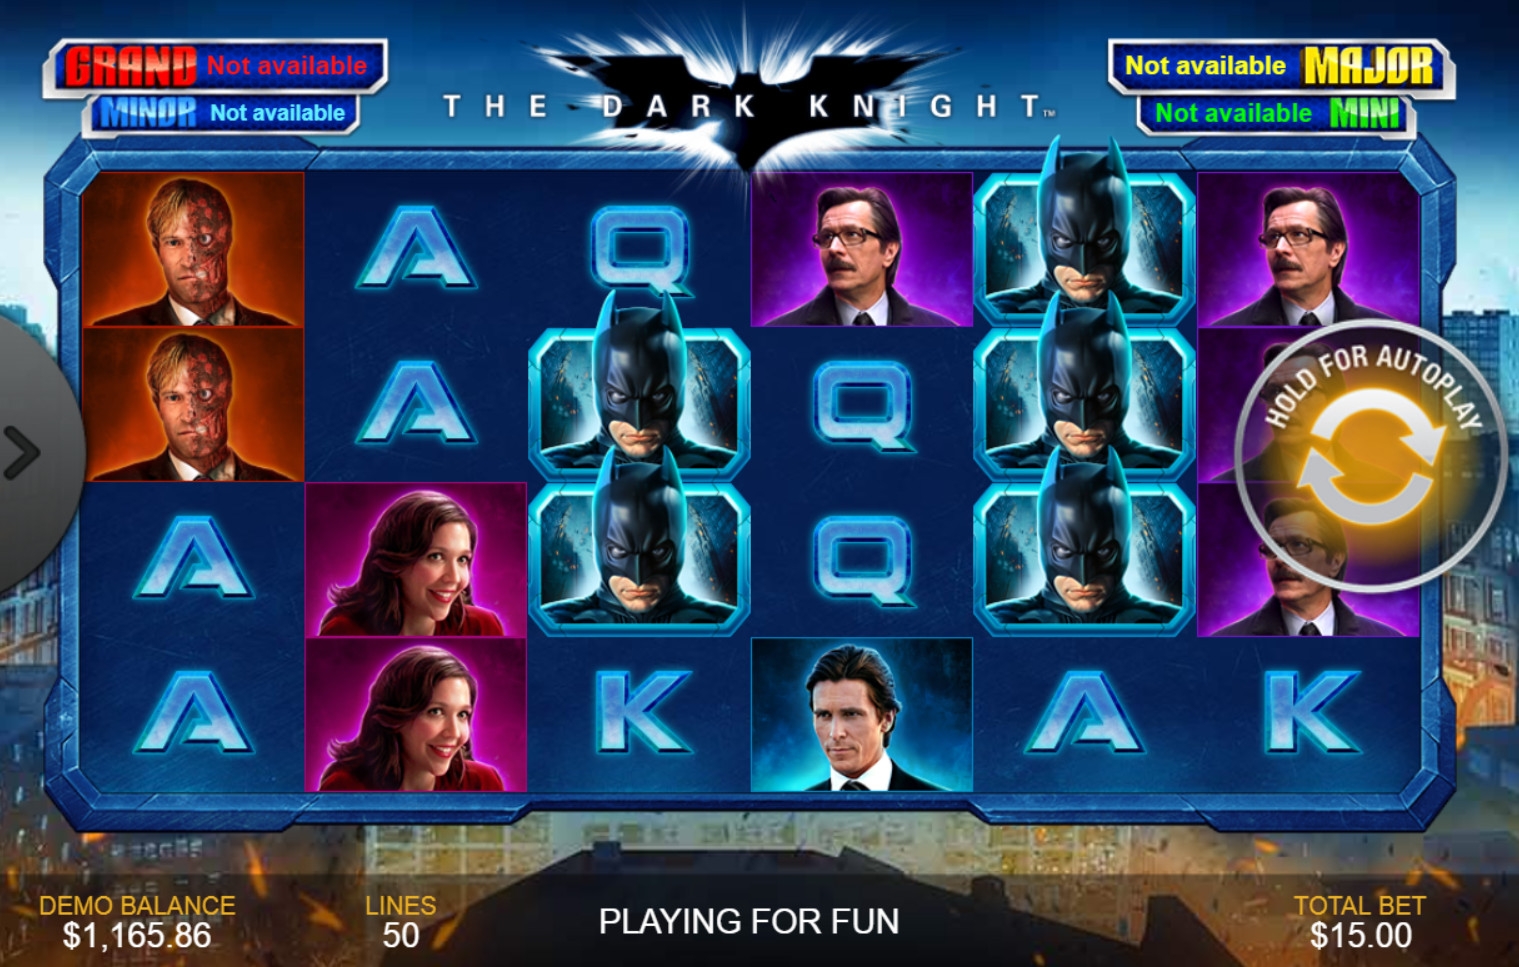 The Dark Knight (The Dark Knight) from category Slots